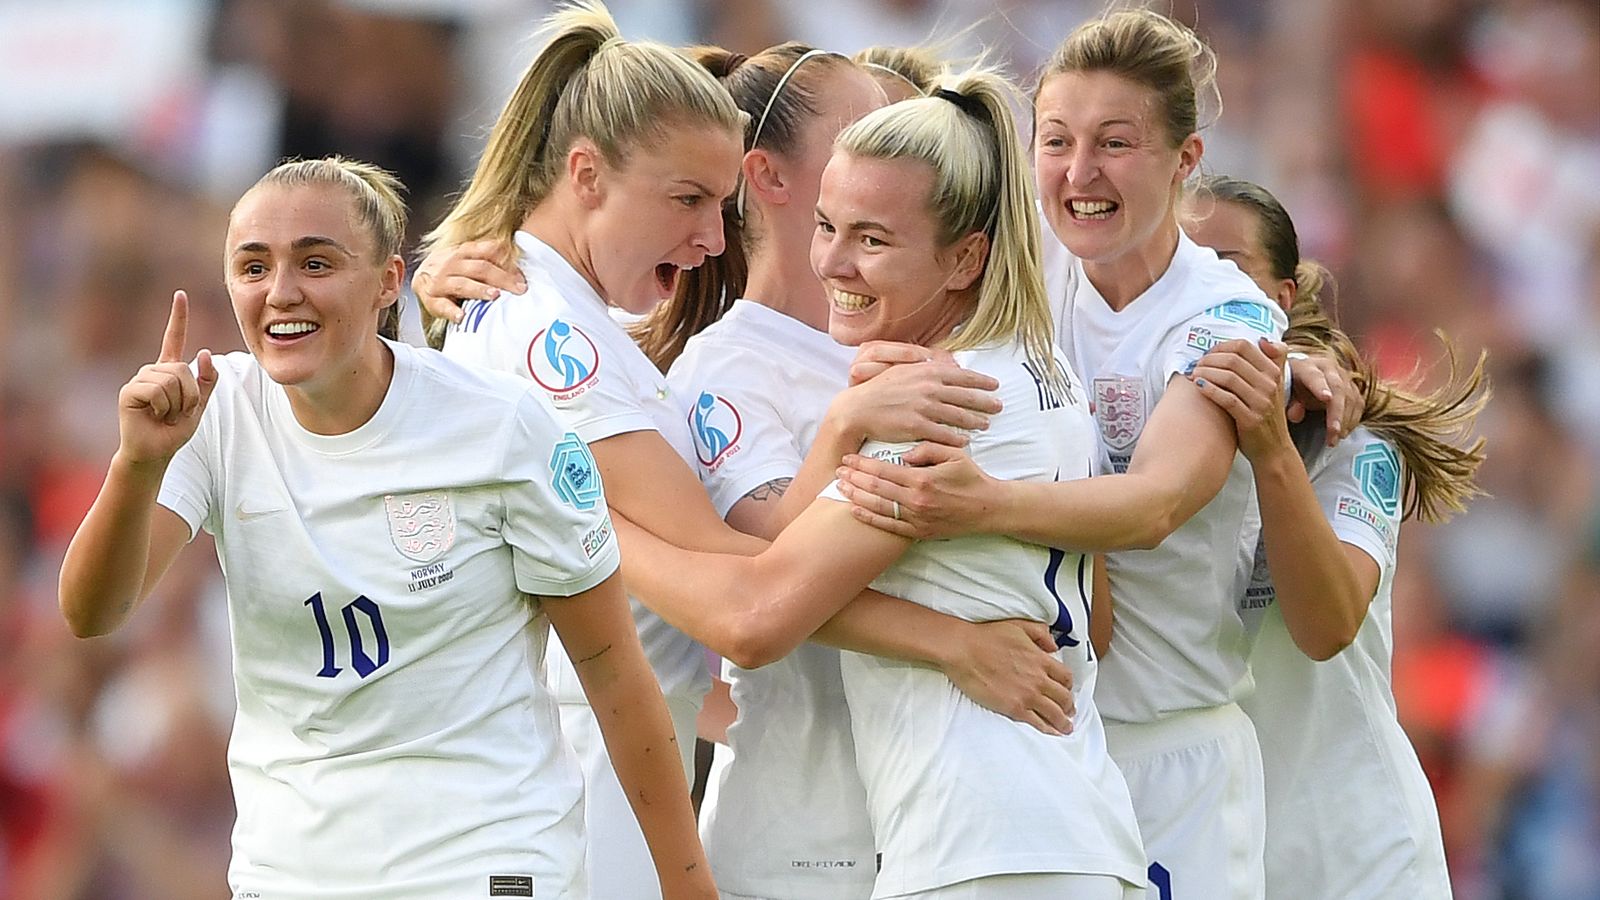 England Kvinner 8-0 Norge Kvinner: Beth Mead scorer hat-trick da løvinner slår alle rekorder Norge |  Fotballnyheter